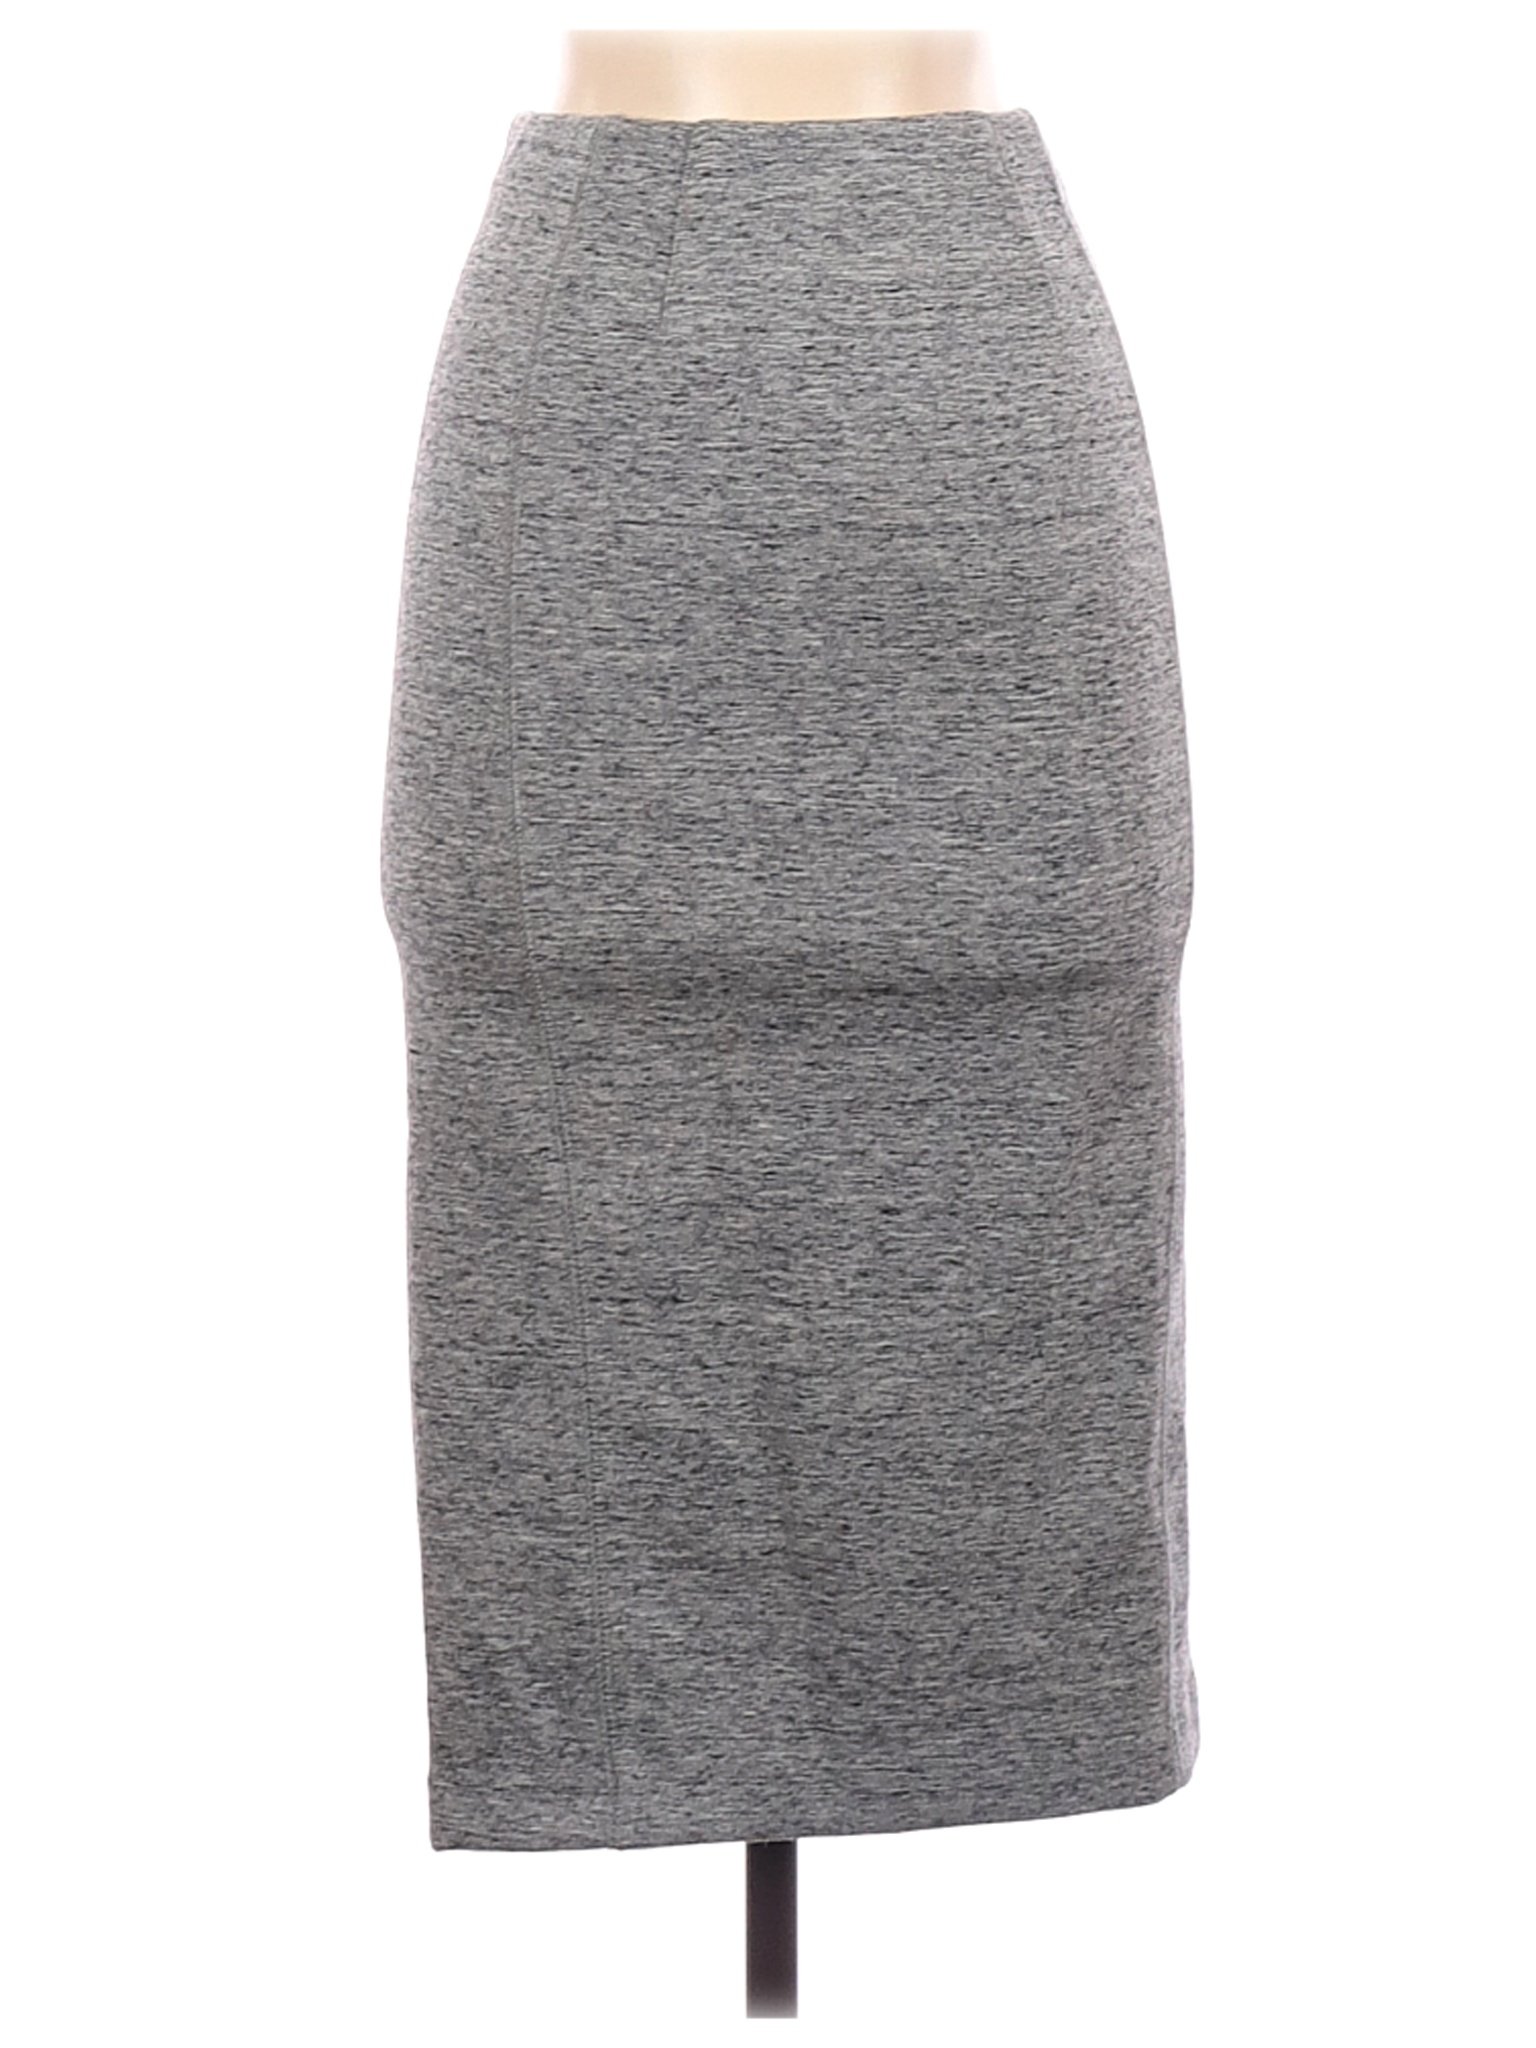 H&M Women Gray Casual Skirt XS | eBay